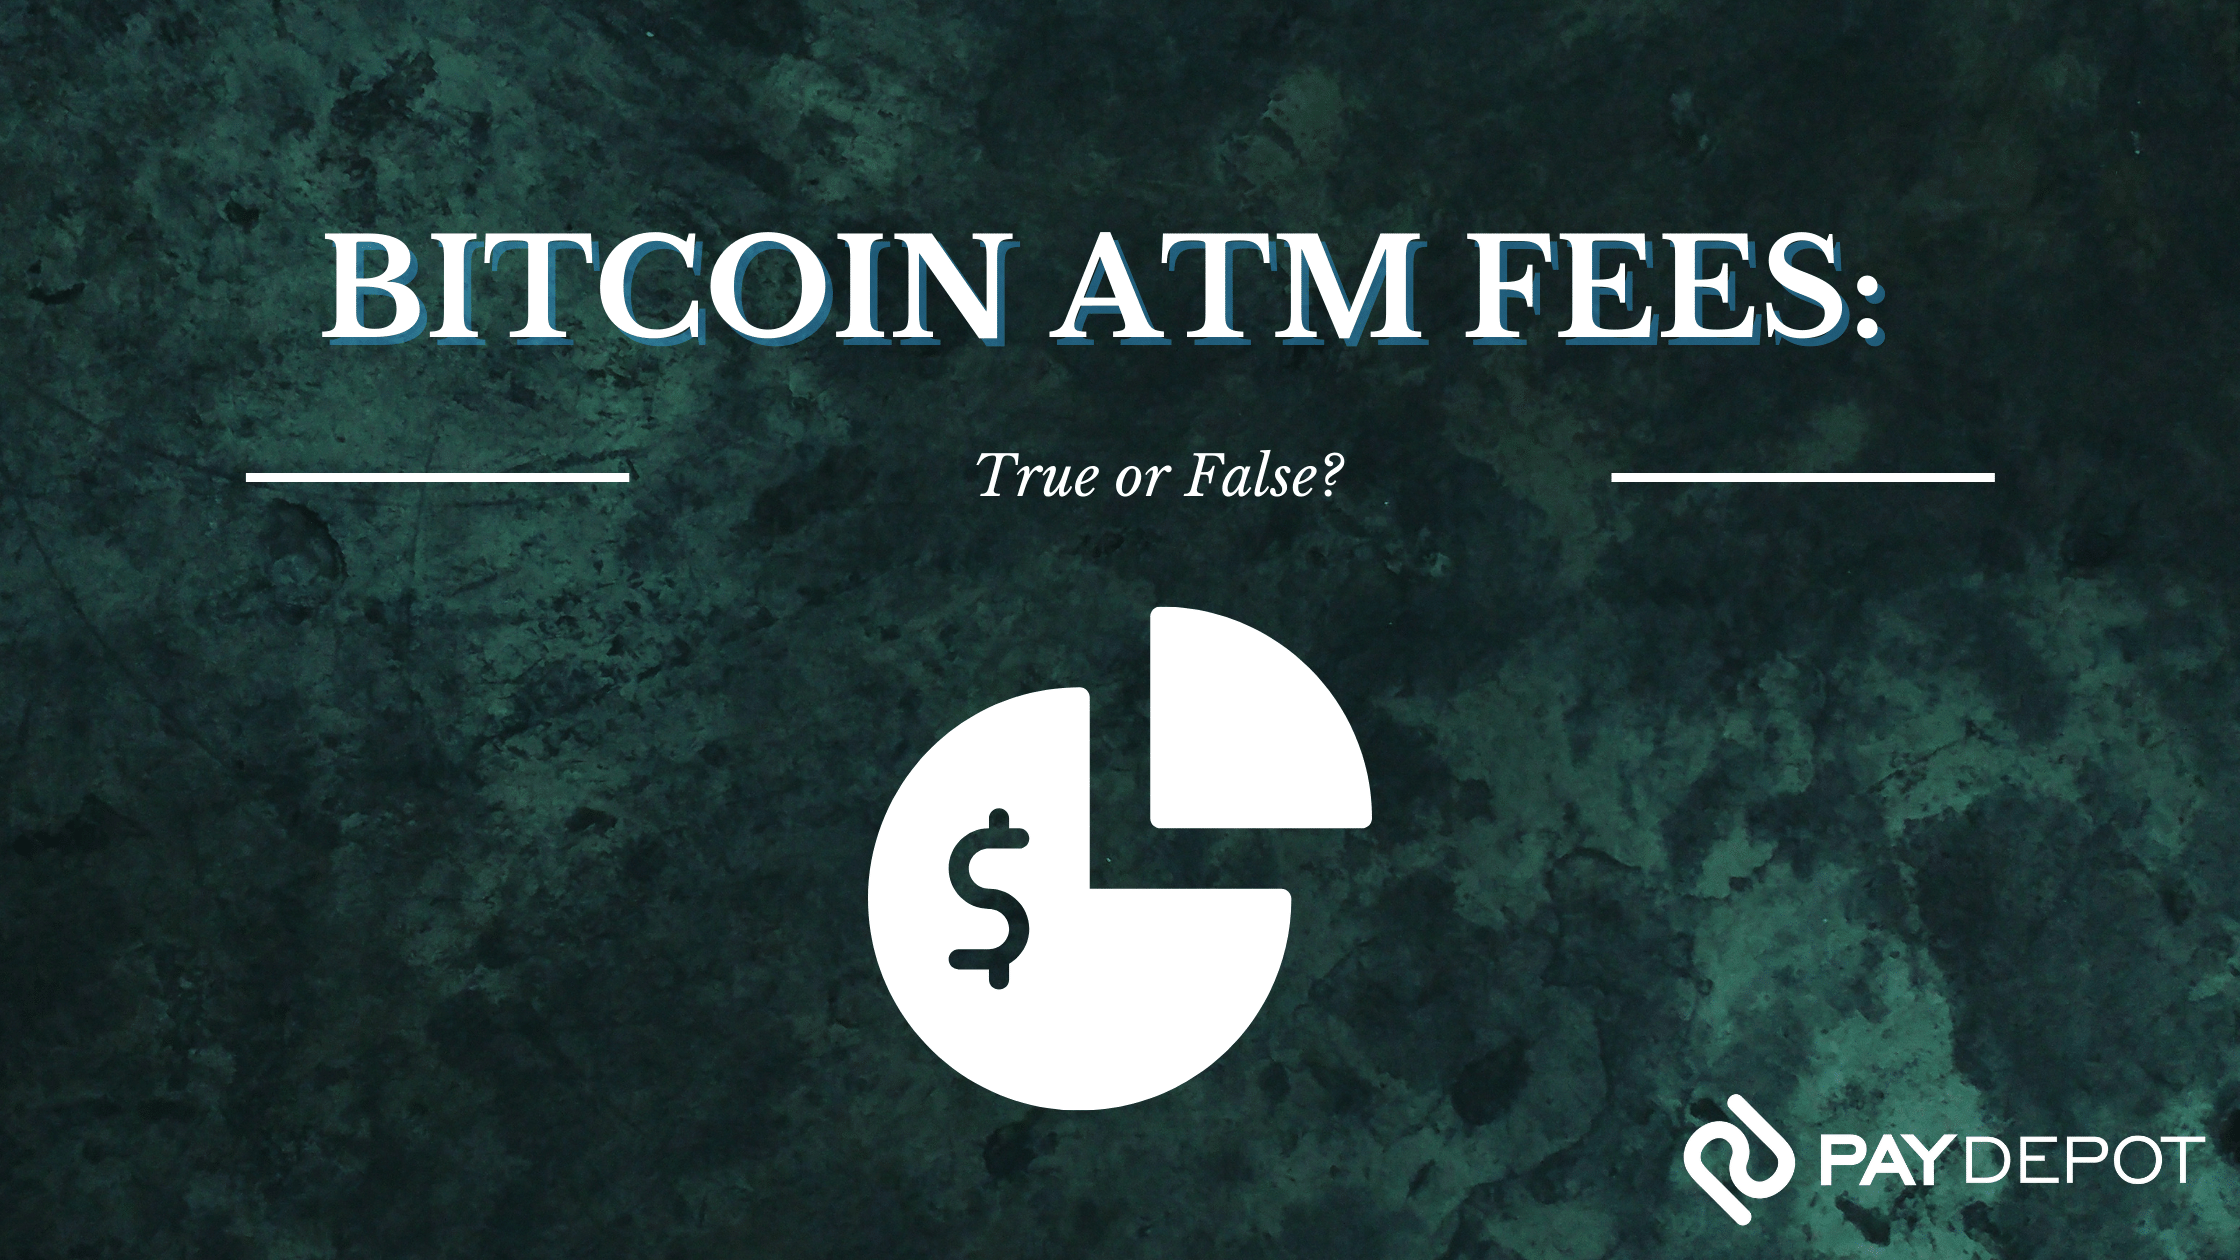 Bitcoin ATM Fees - True or False?